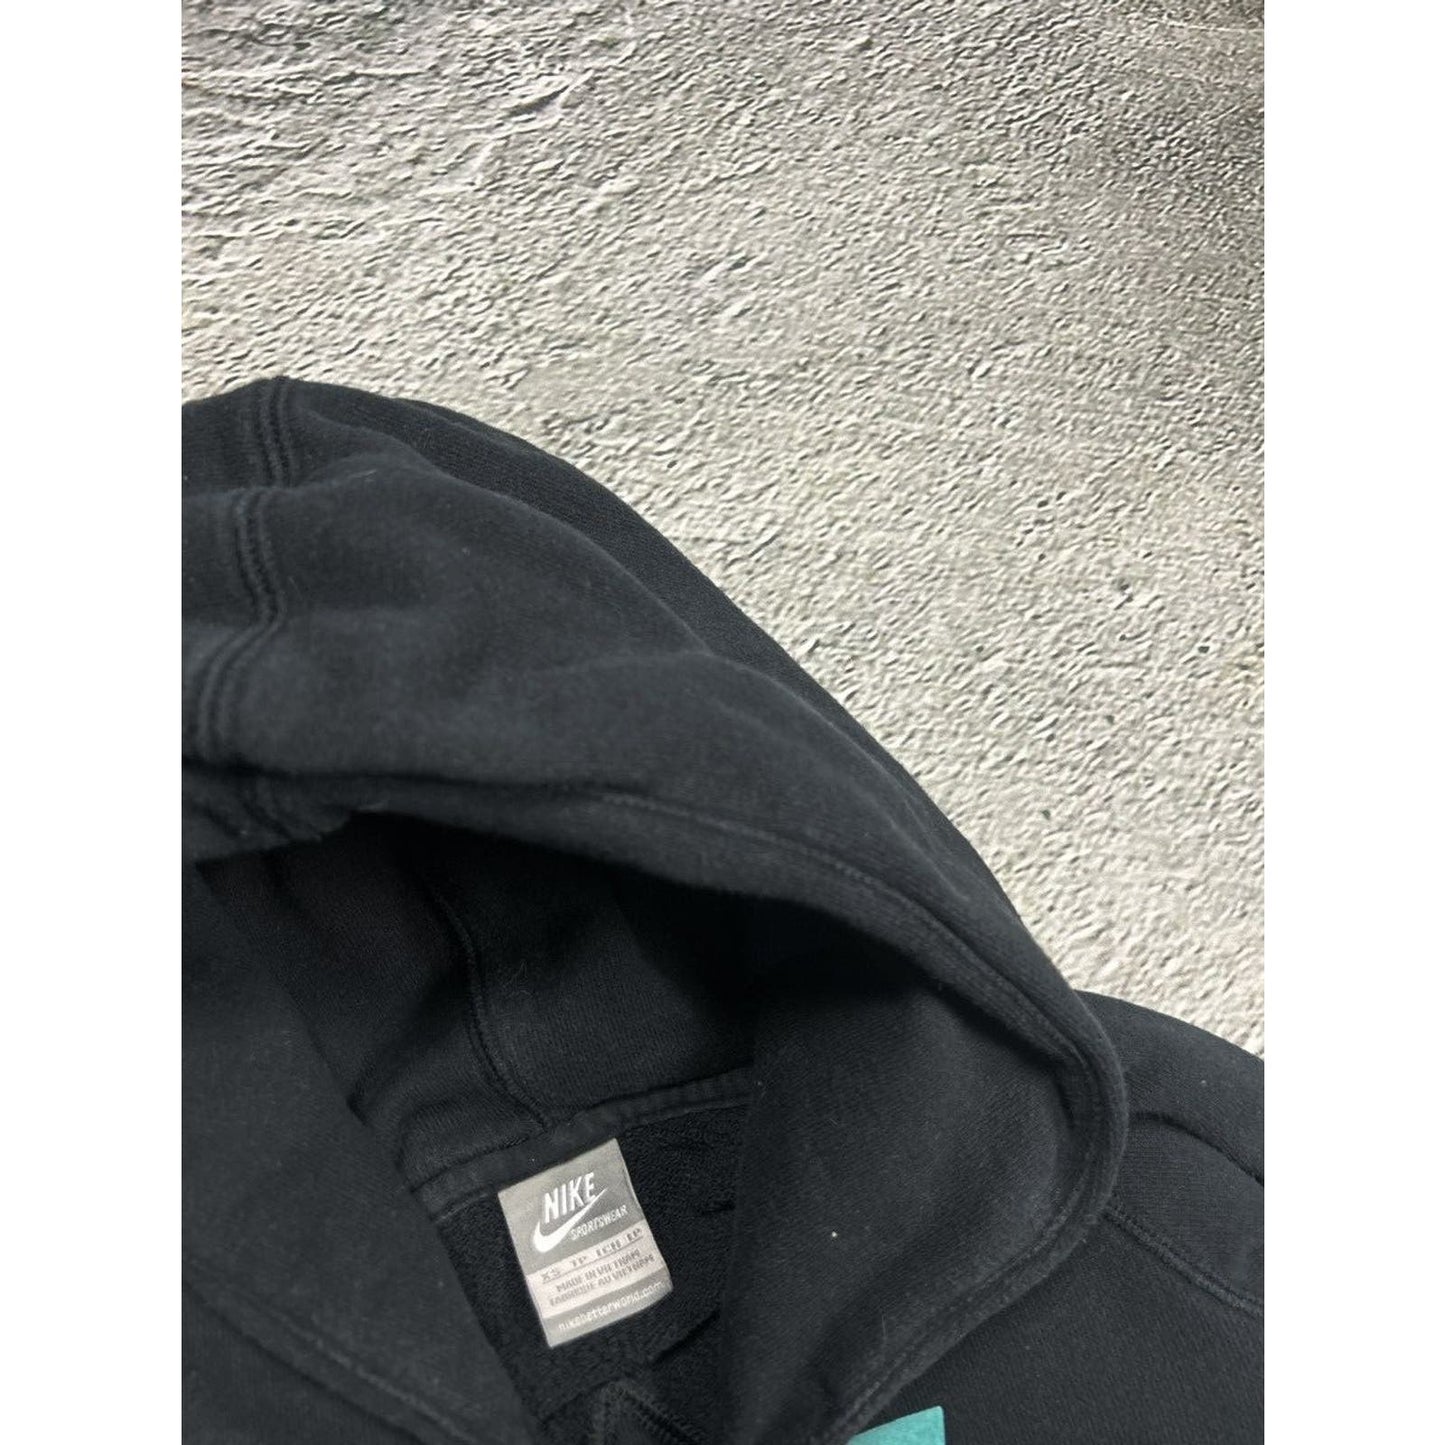 Nike vintage black hoodie big logo 2000s